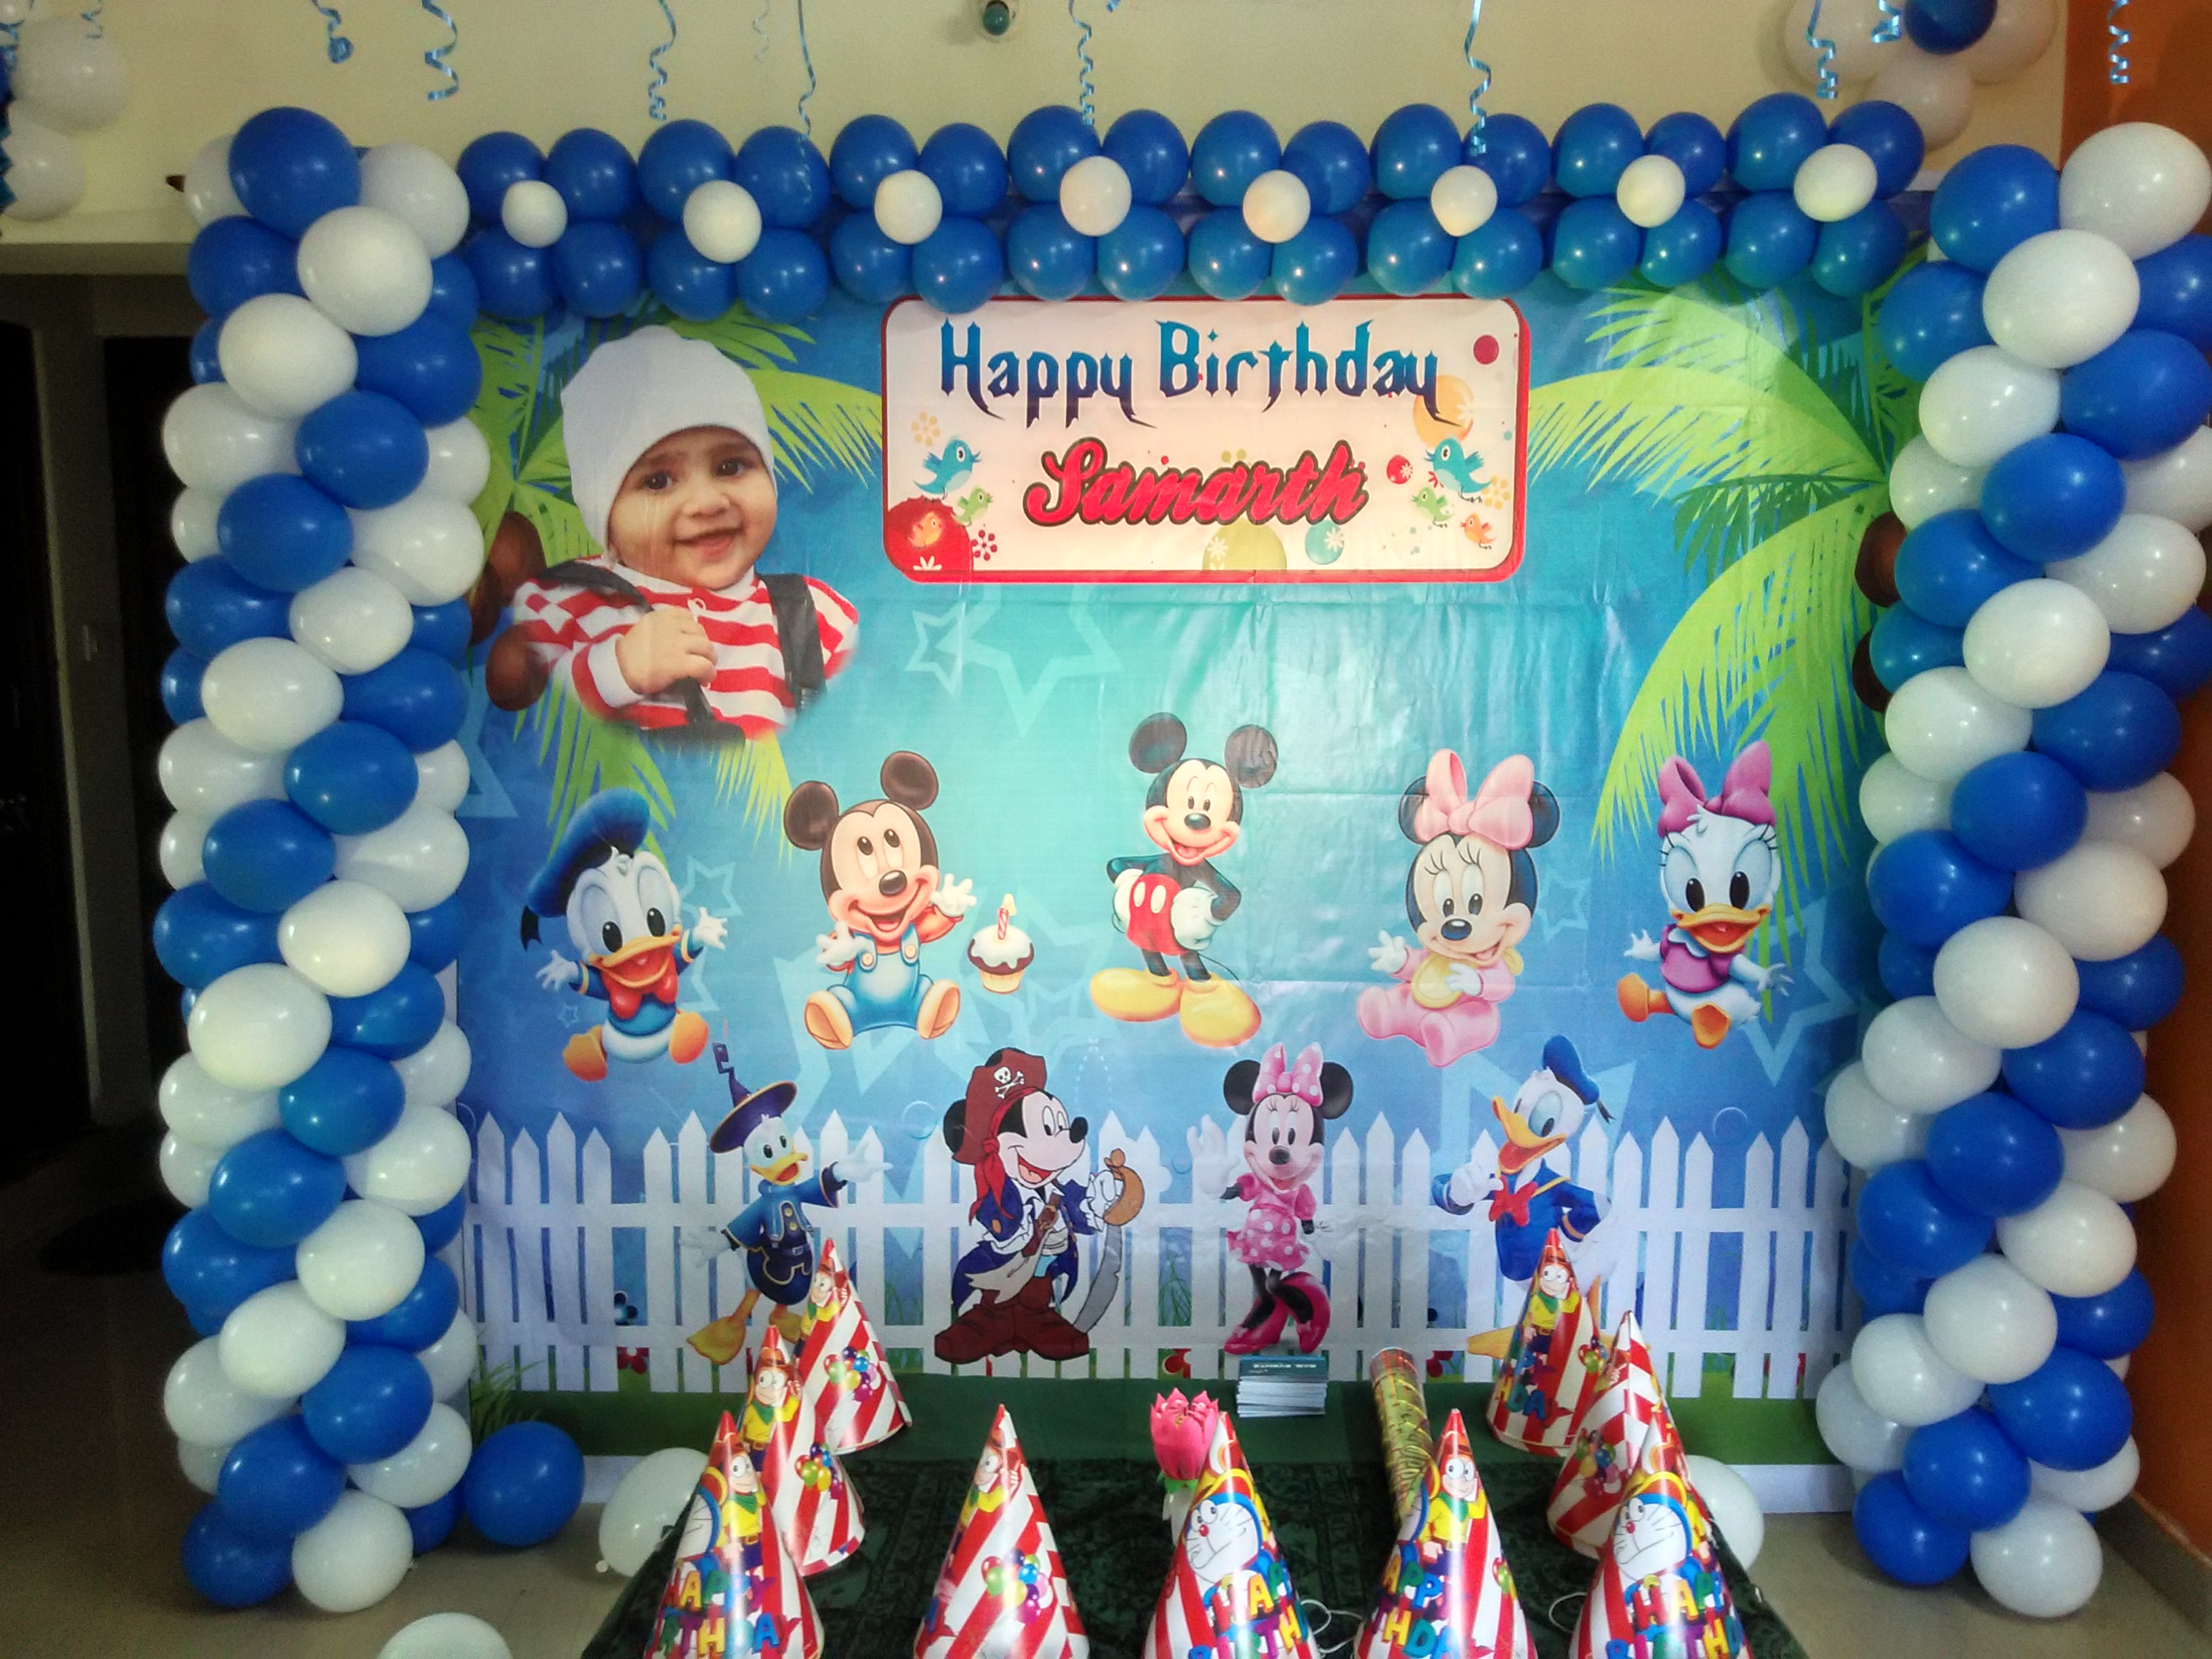 beb-mickey-birthday-cakes-mickey-mouse-birthday-decorations-mickey-1st-birthdays-mickey